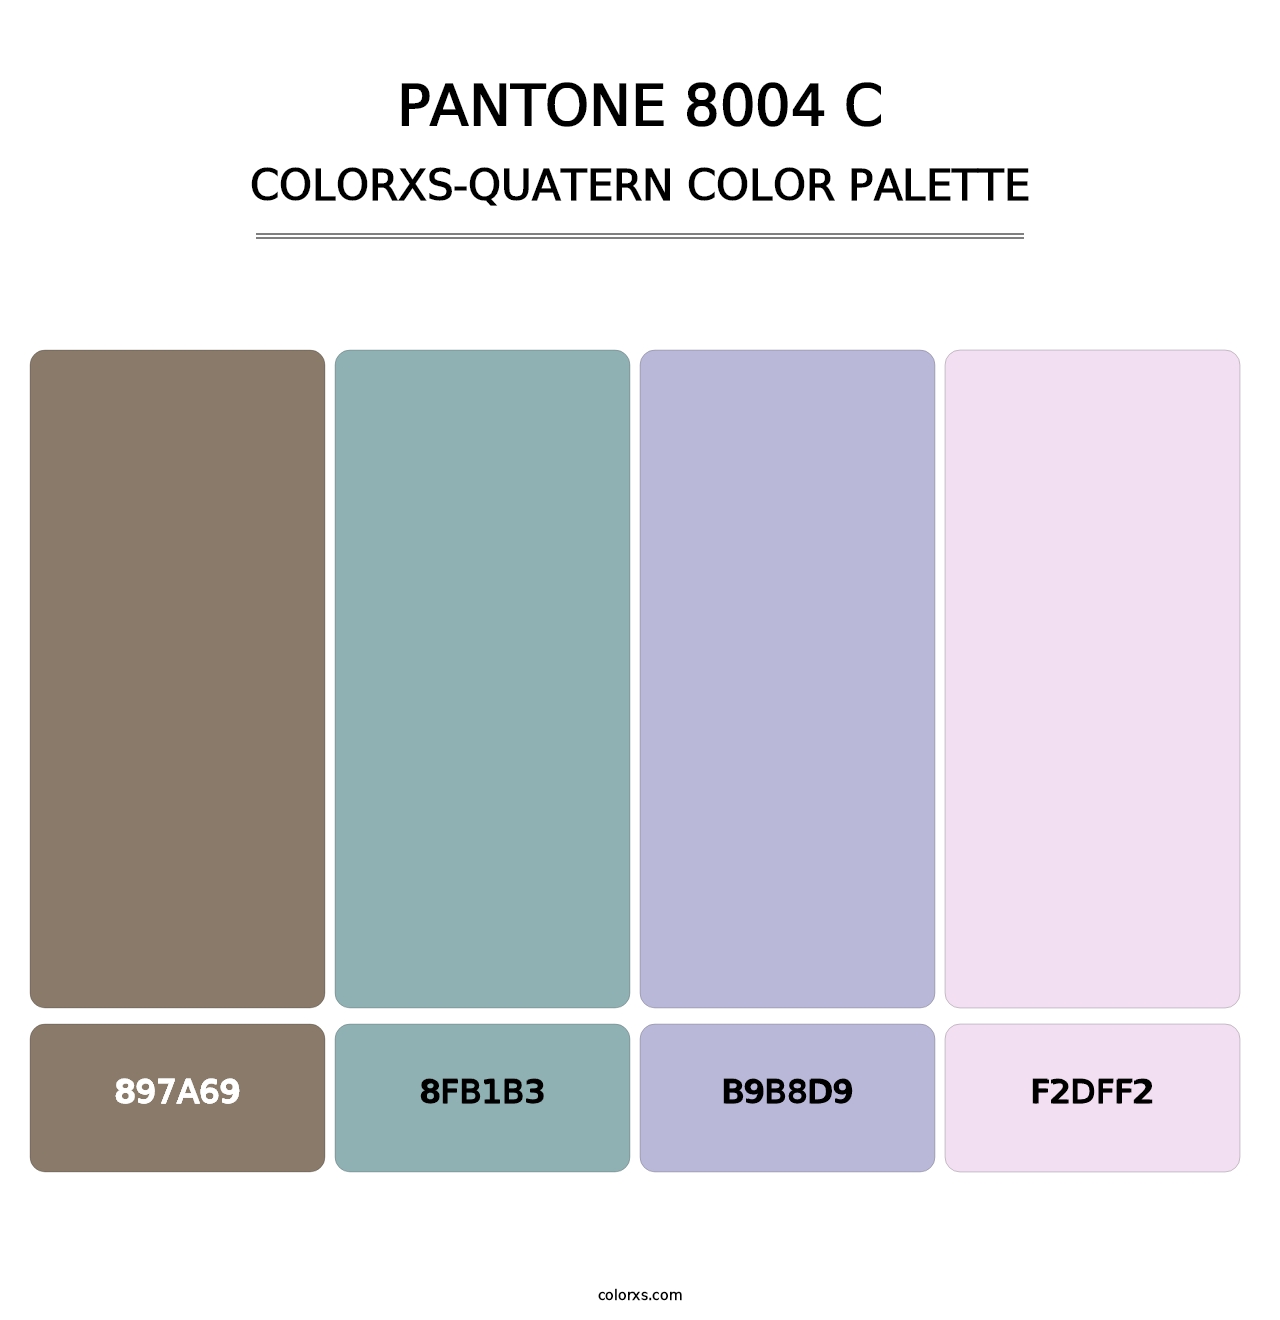 PANTONE 8004 C - Colorxs Quatern Palette